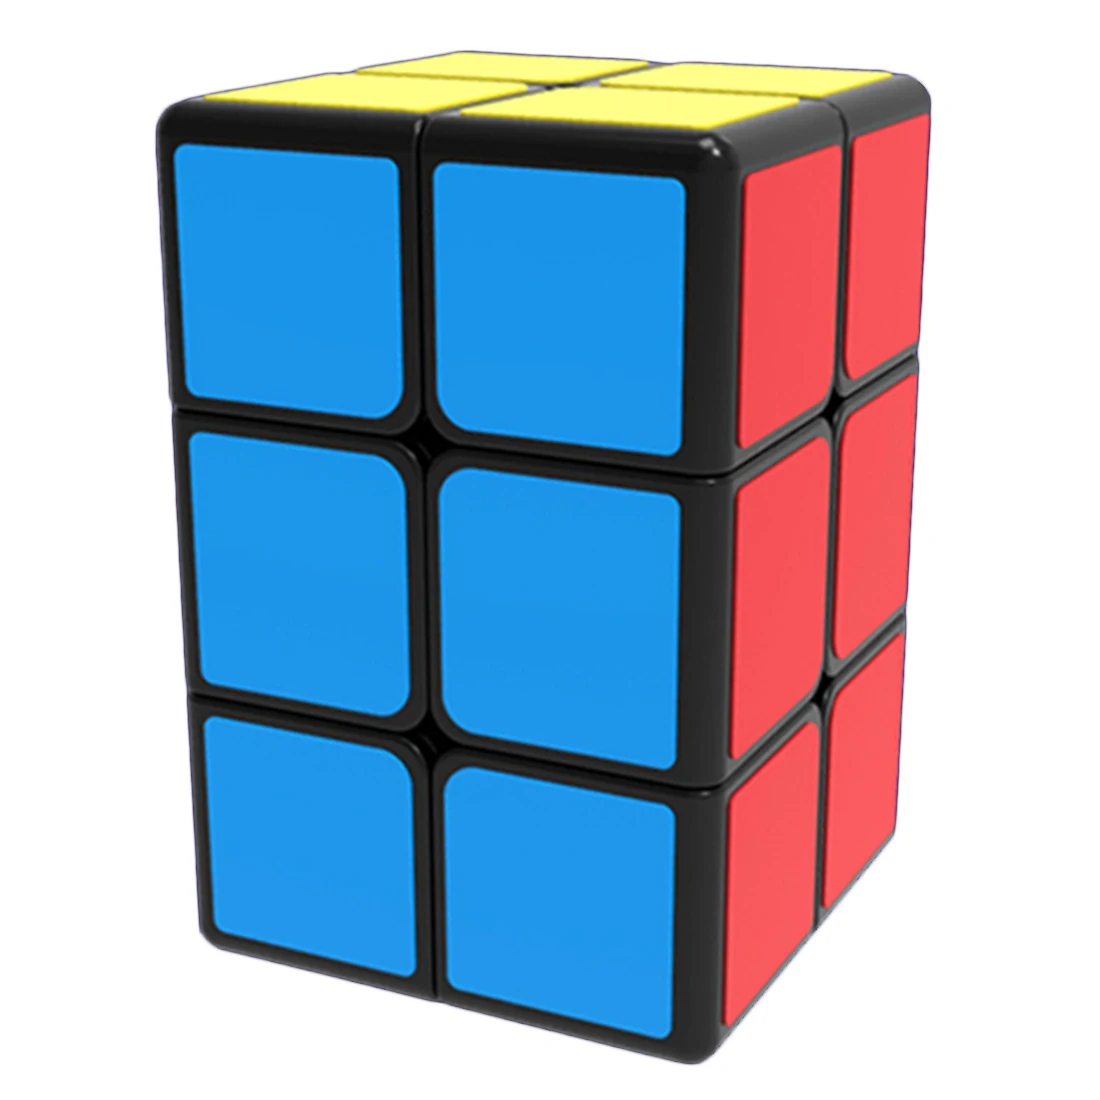 Mofangge 2x2x3 Magic Cube гладкая творческая головоломка - Цвет: Черный